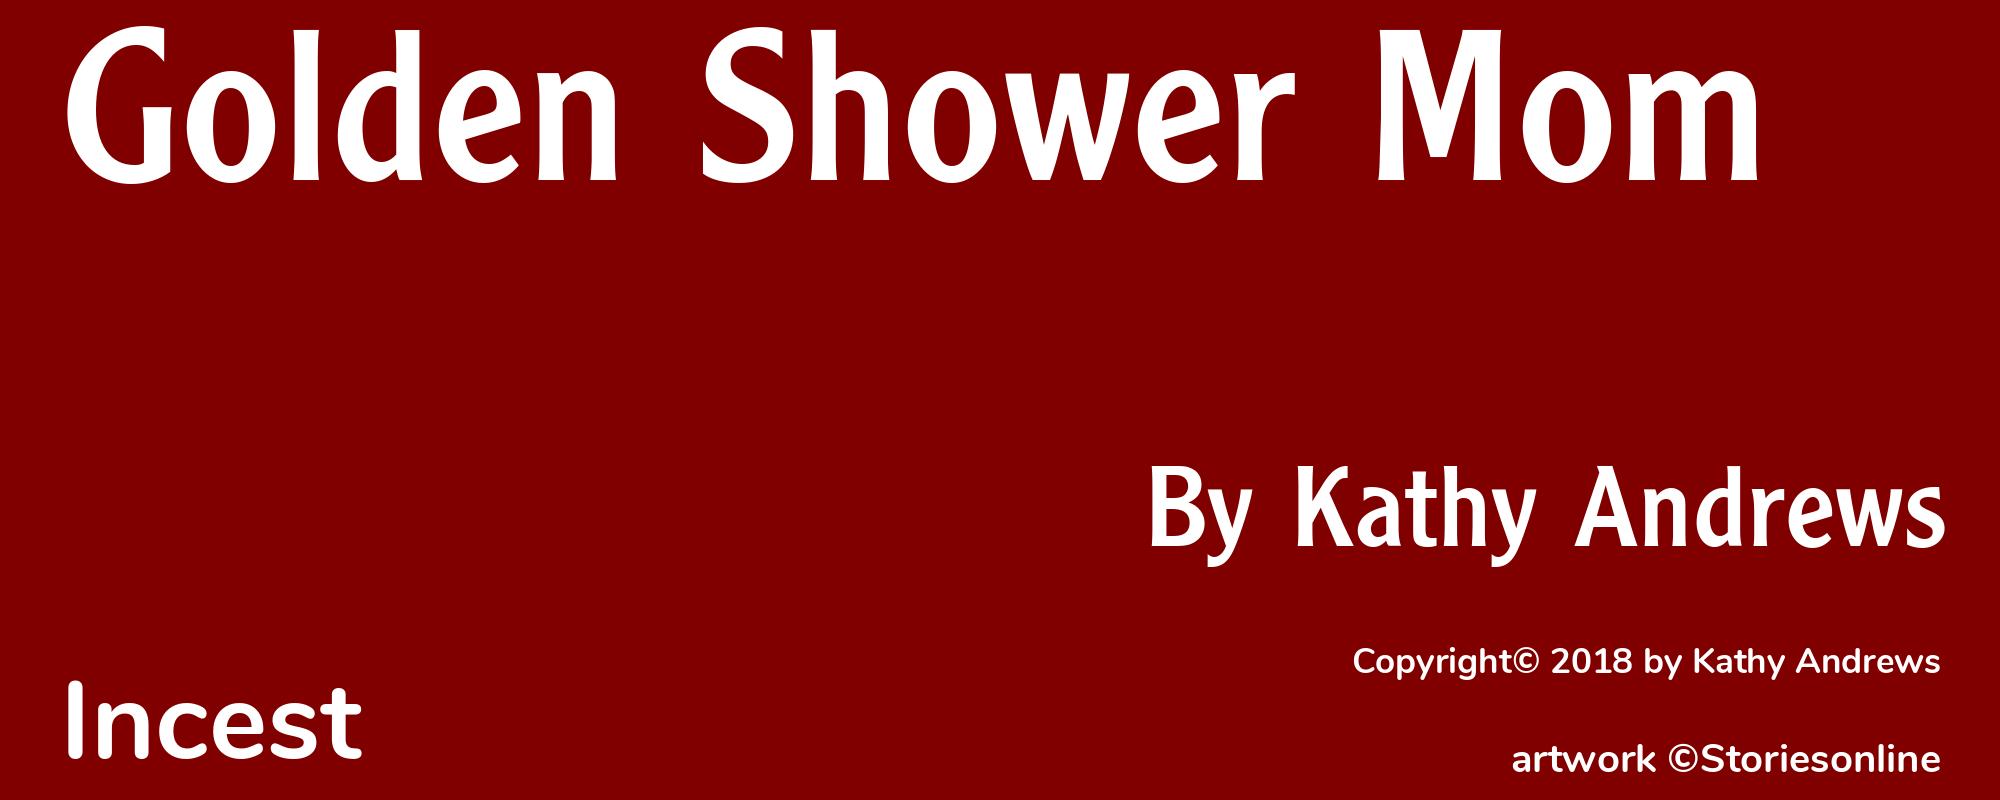 Golden Shower Mom - Cover